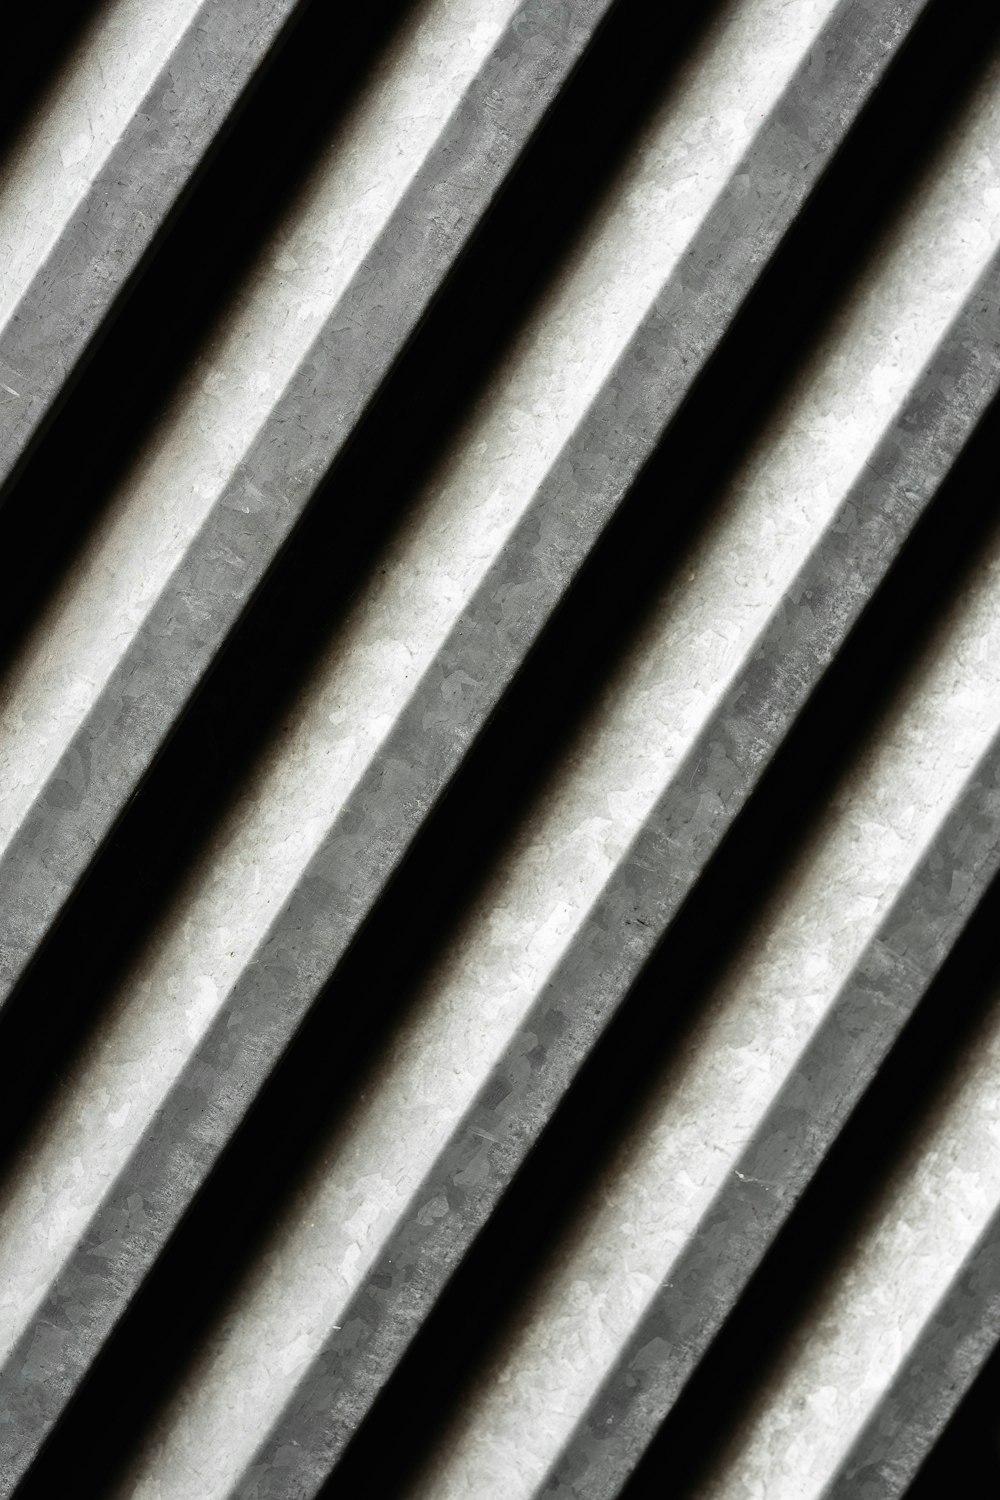 Una foto en blanco y negro de barras de metal